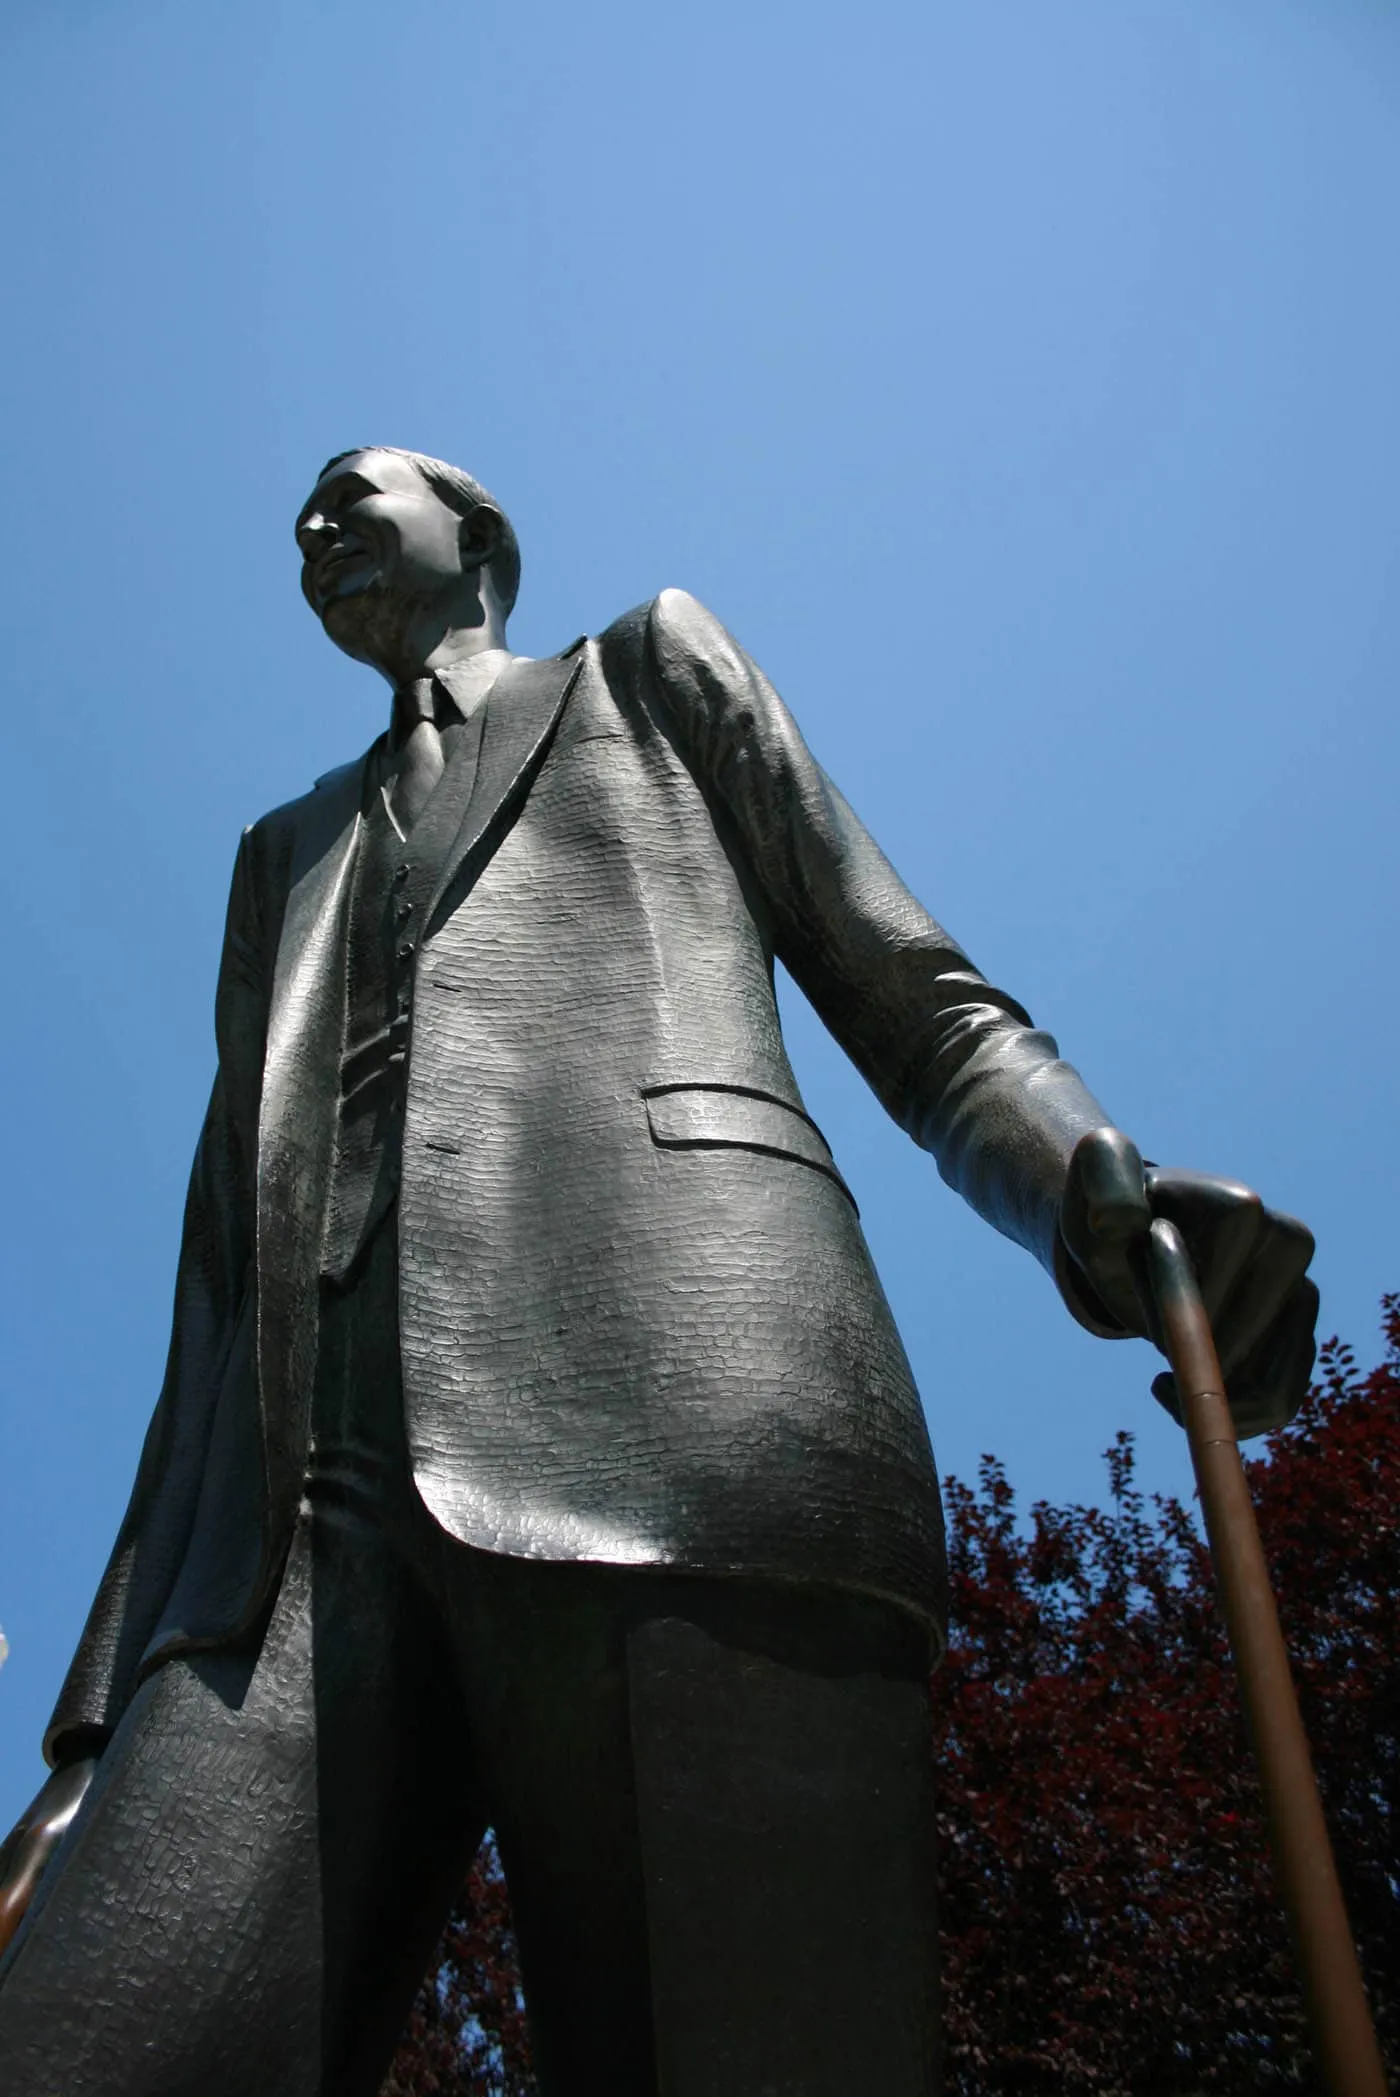 Statue of Robert Wadlow, the world's tallest man, in Alton, Illinois.